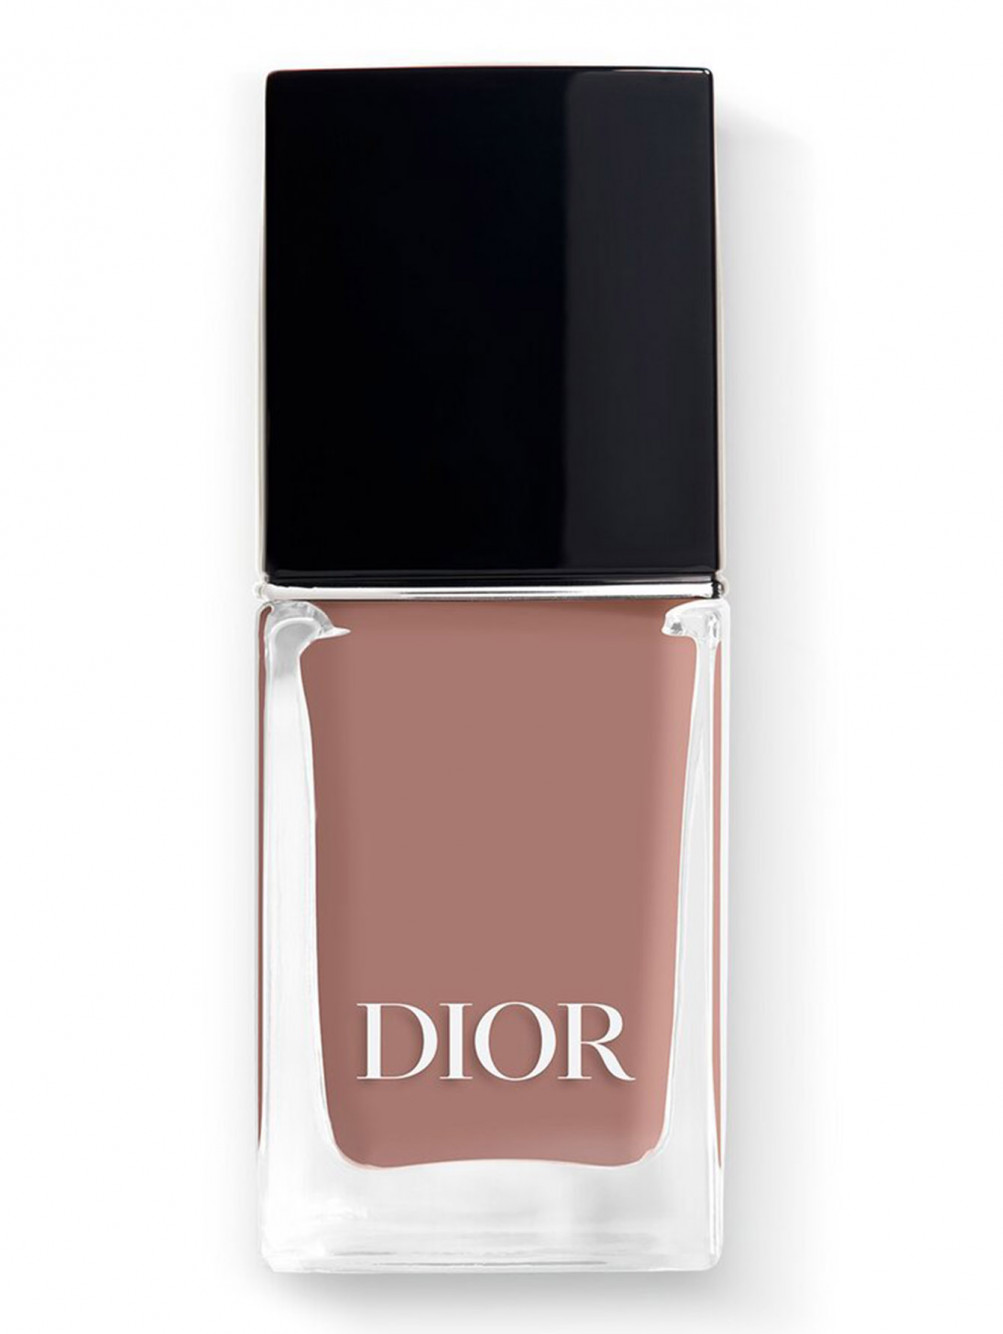 Лак для ногтей с эффектом гелевого покрытия Dior Vernis, 449 Танцы, 10 мл - Общий вид